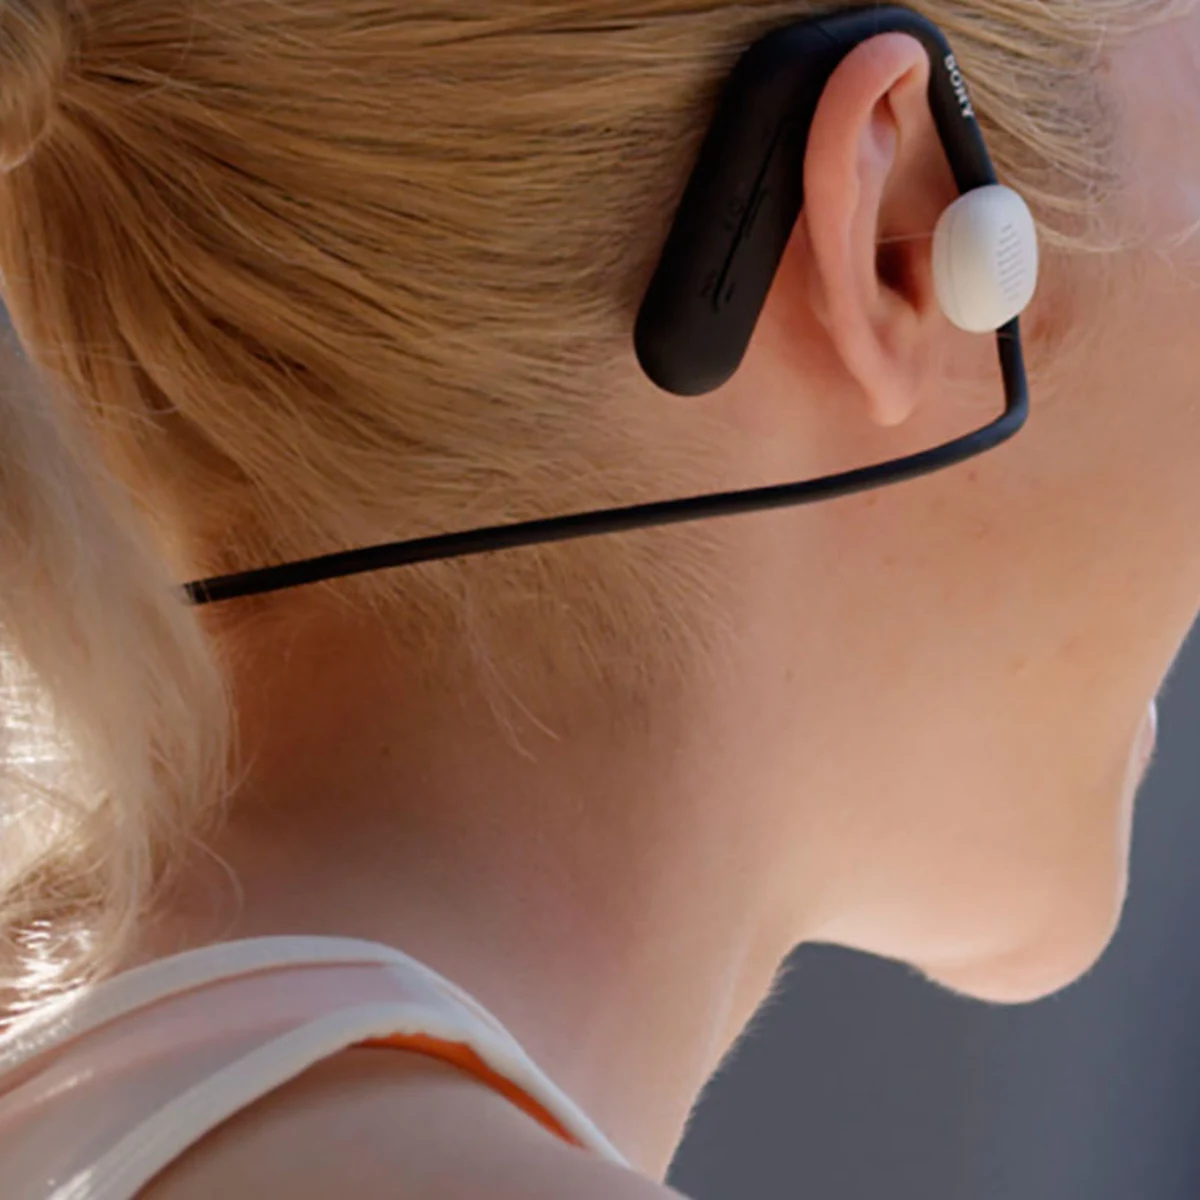 Sony lanza unos nuevos auriculares con calidad de estudio